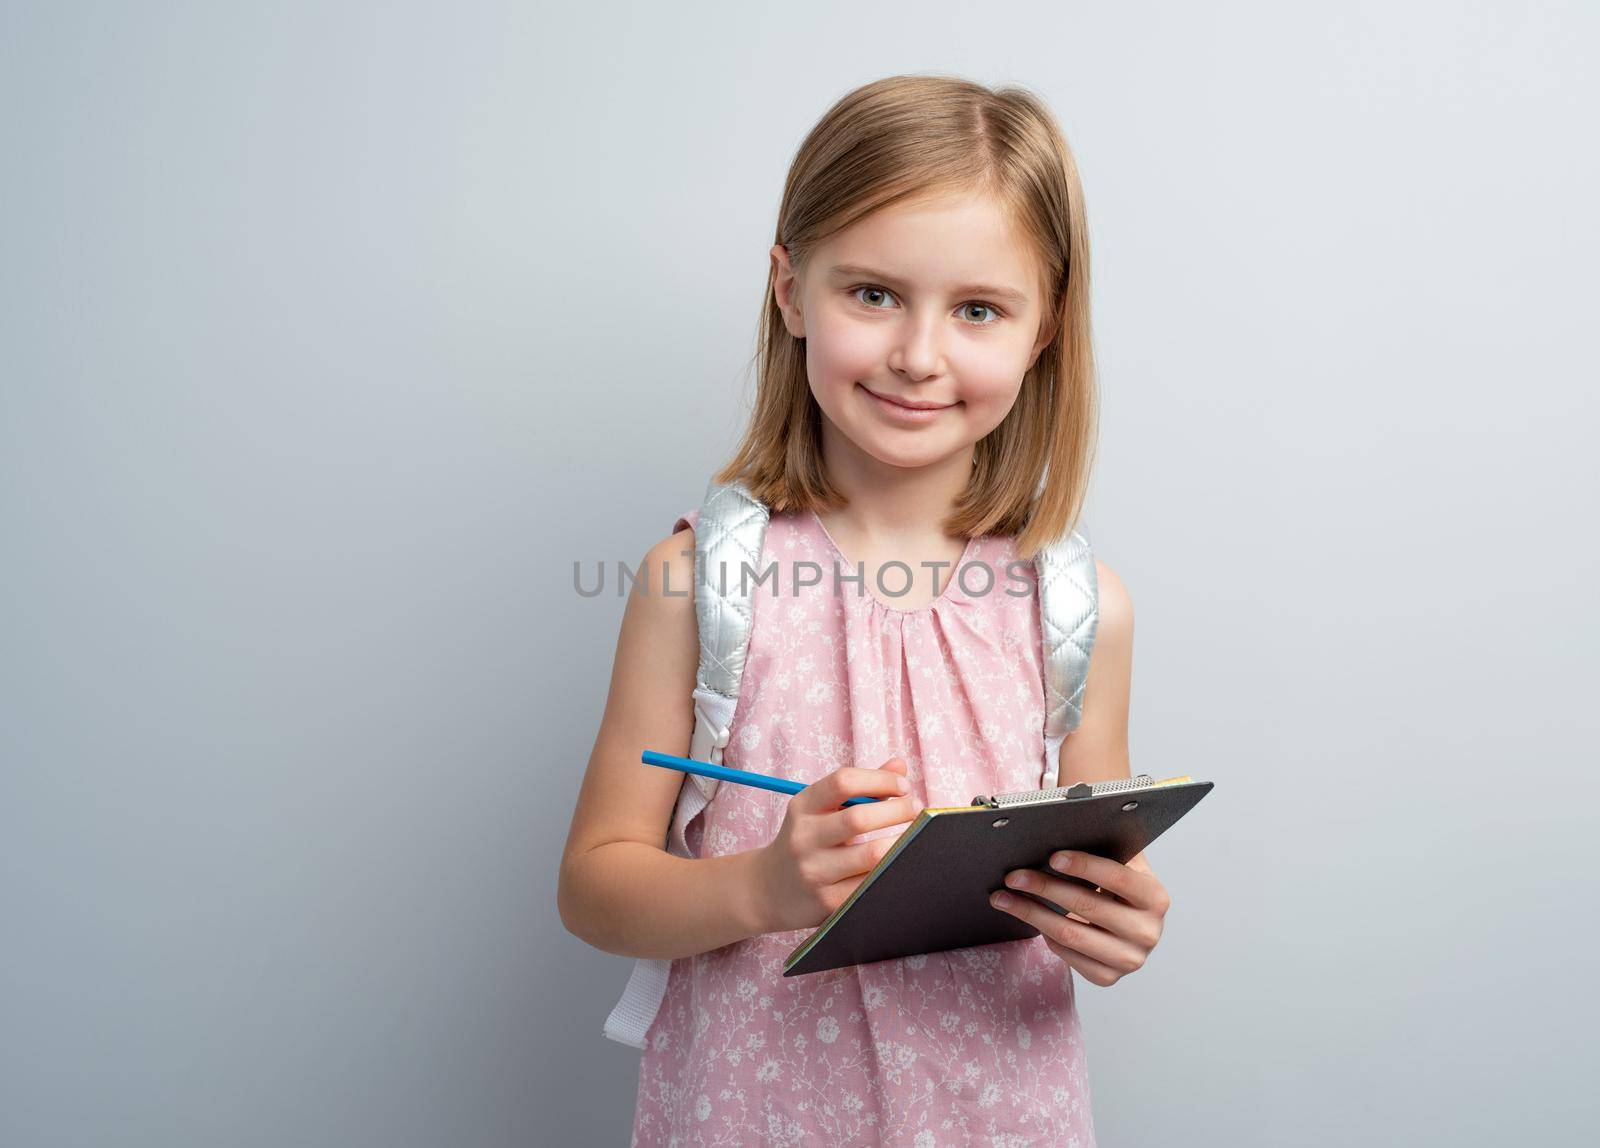 Schoolgirl taking notes in writing pad by GekaSkr